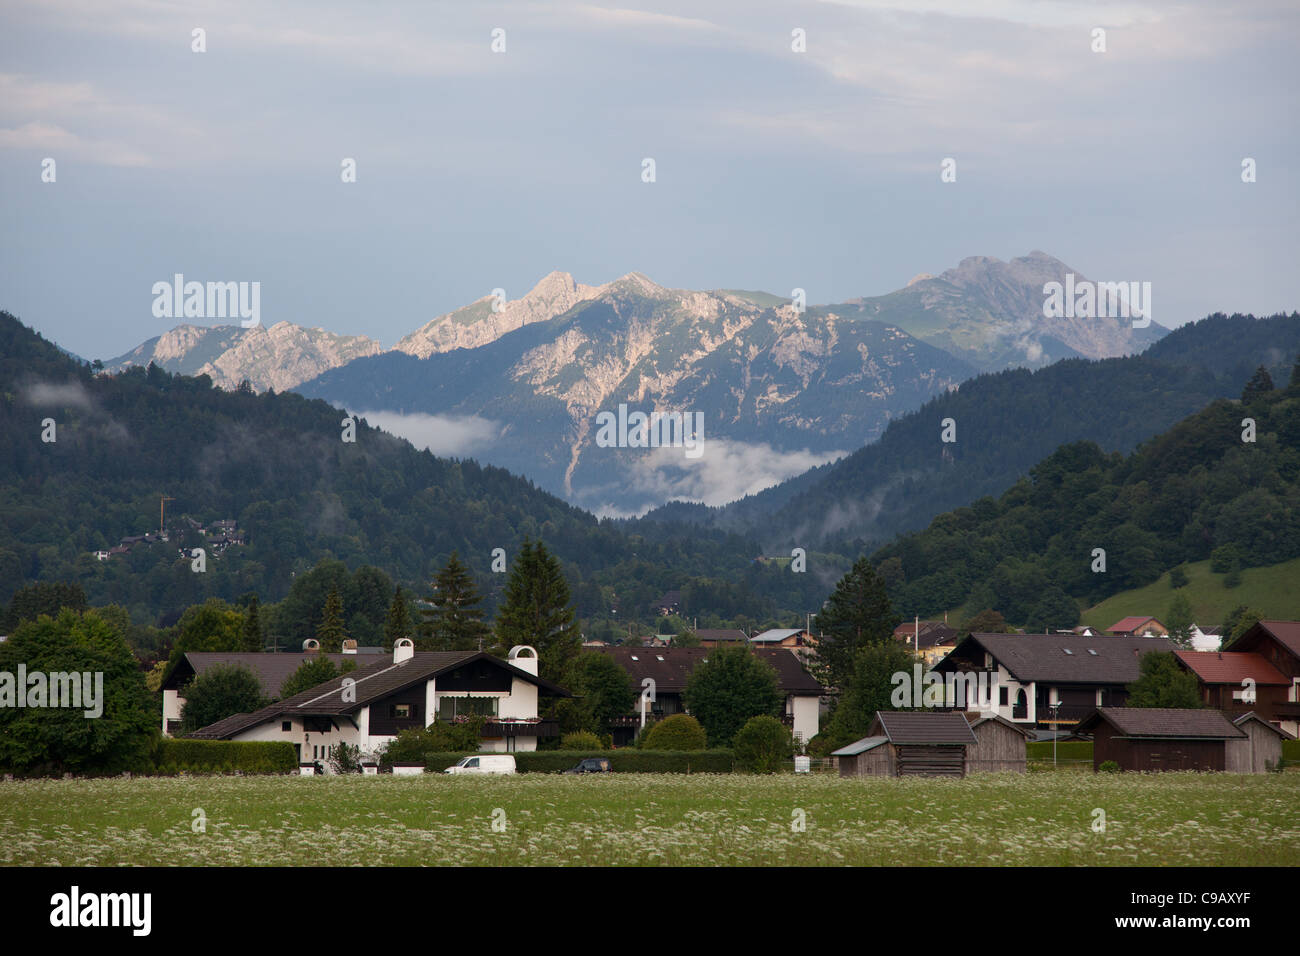 Mountain in Garmisch-Partenkirchen, Germany Stock Photo